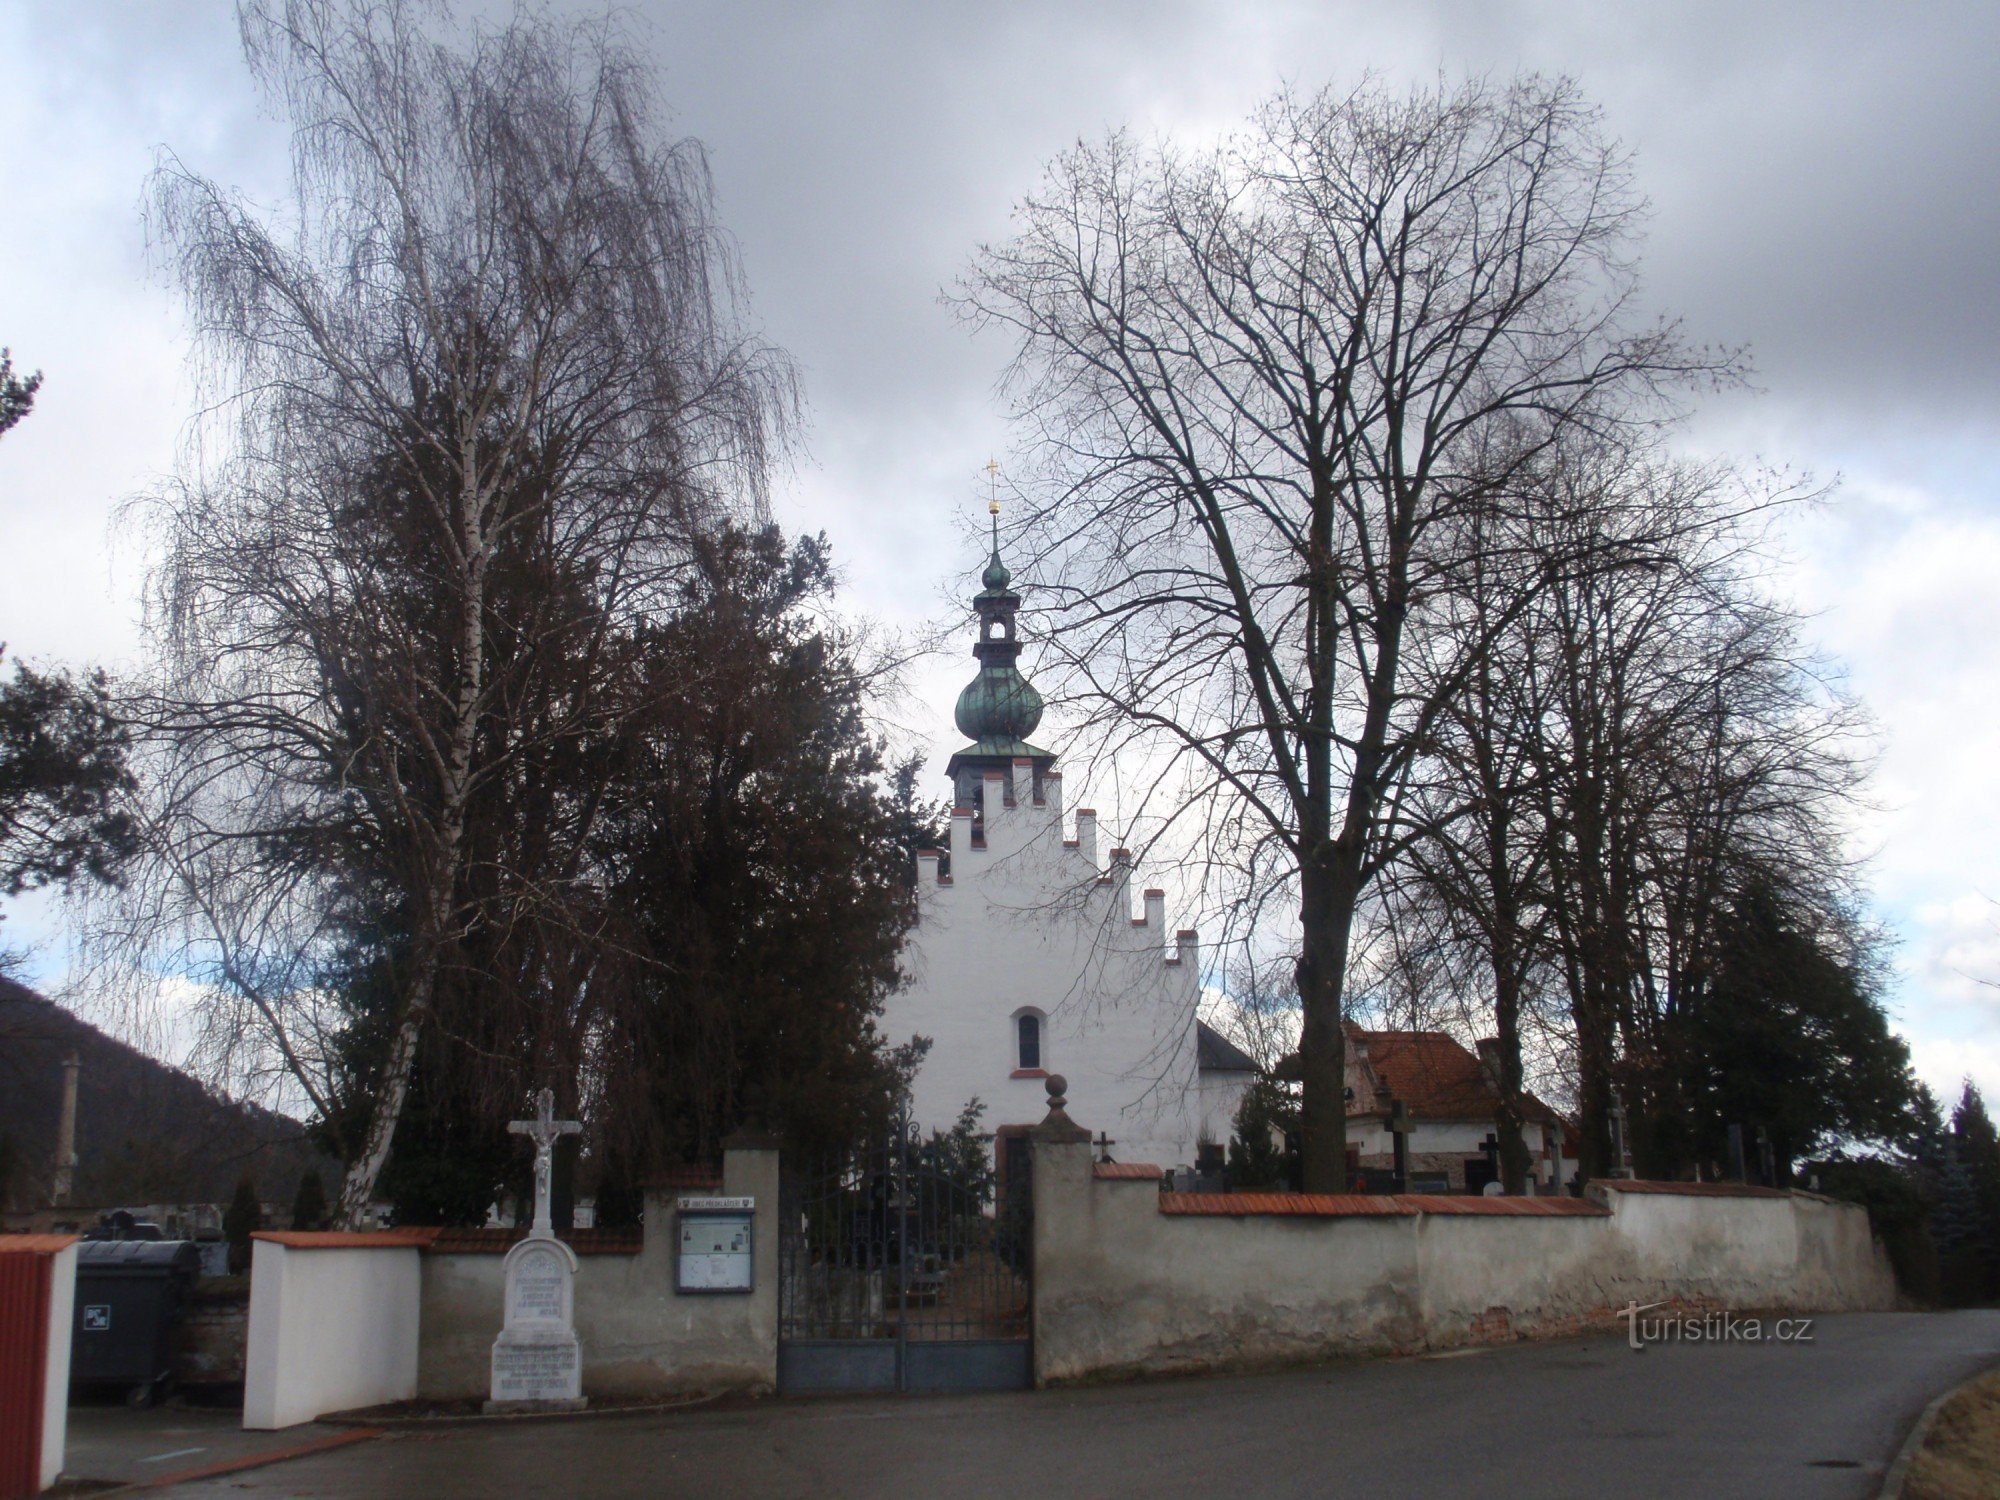 ティシュノフ近くのプレ修道院 - 小さなモニュメント